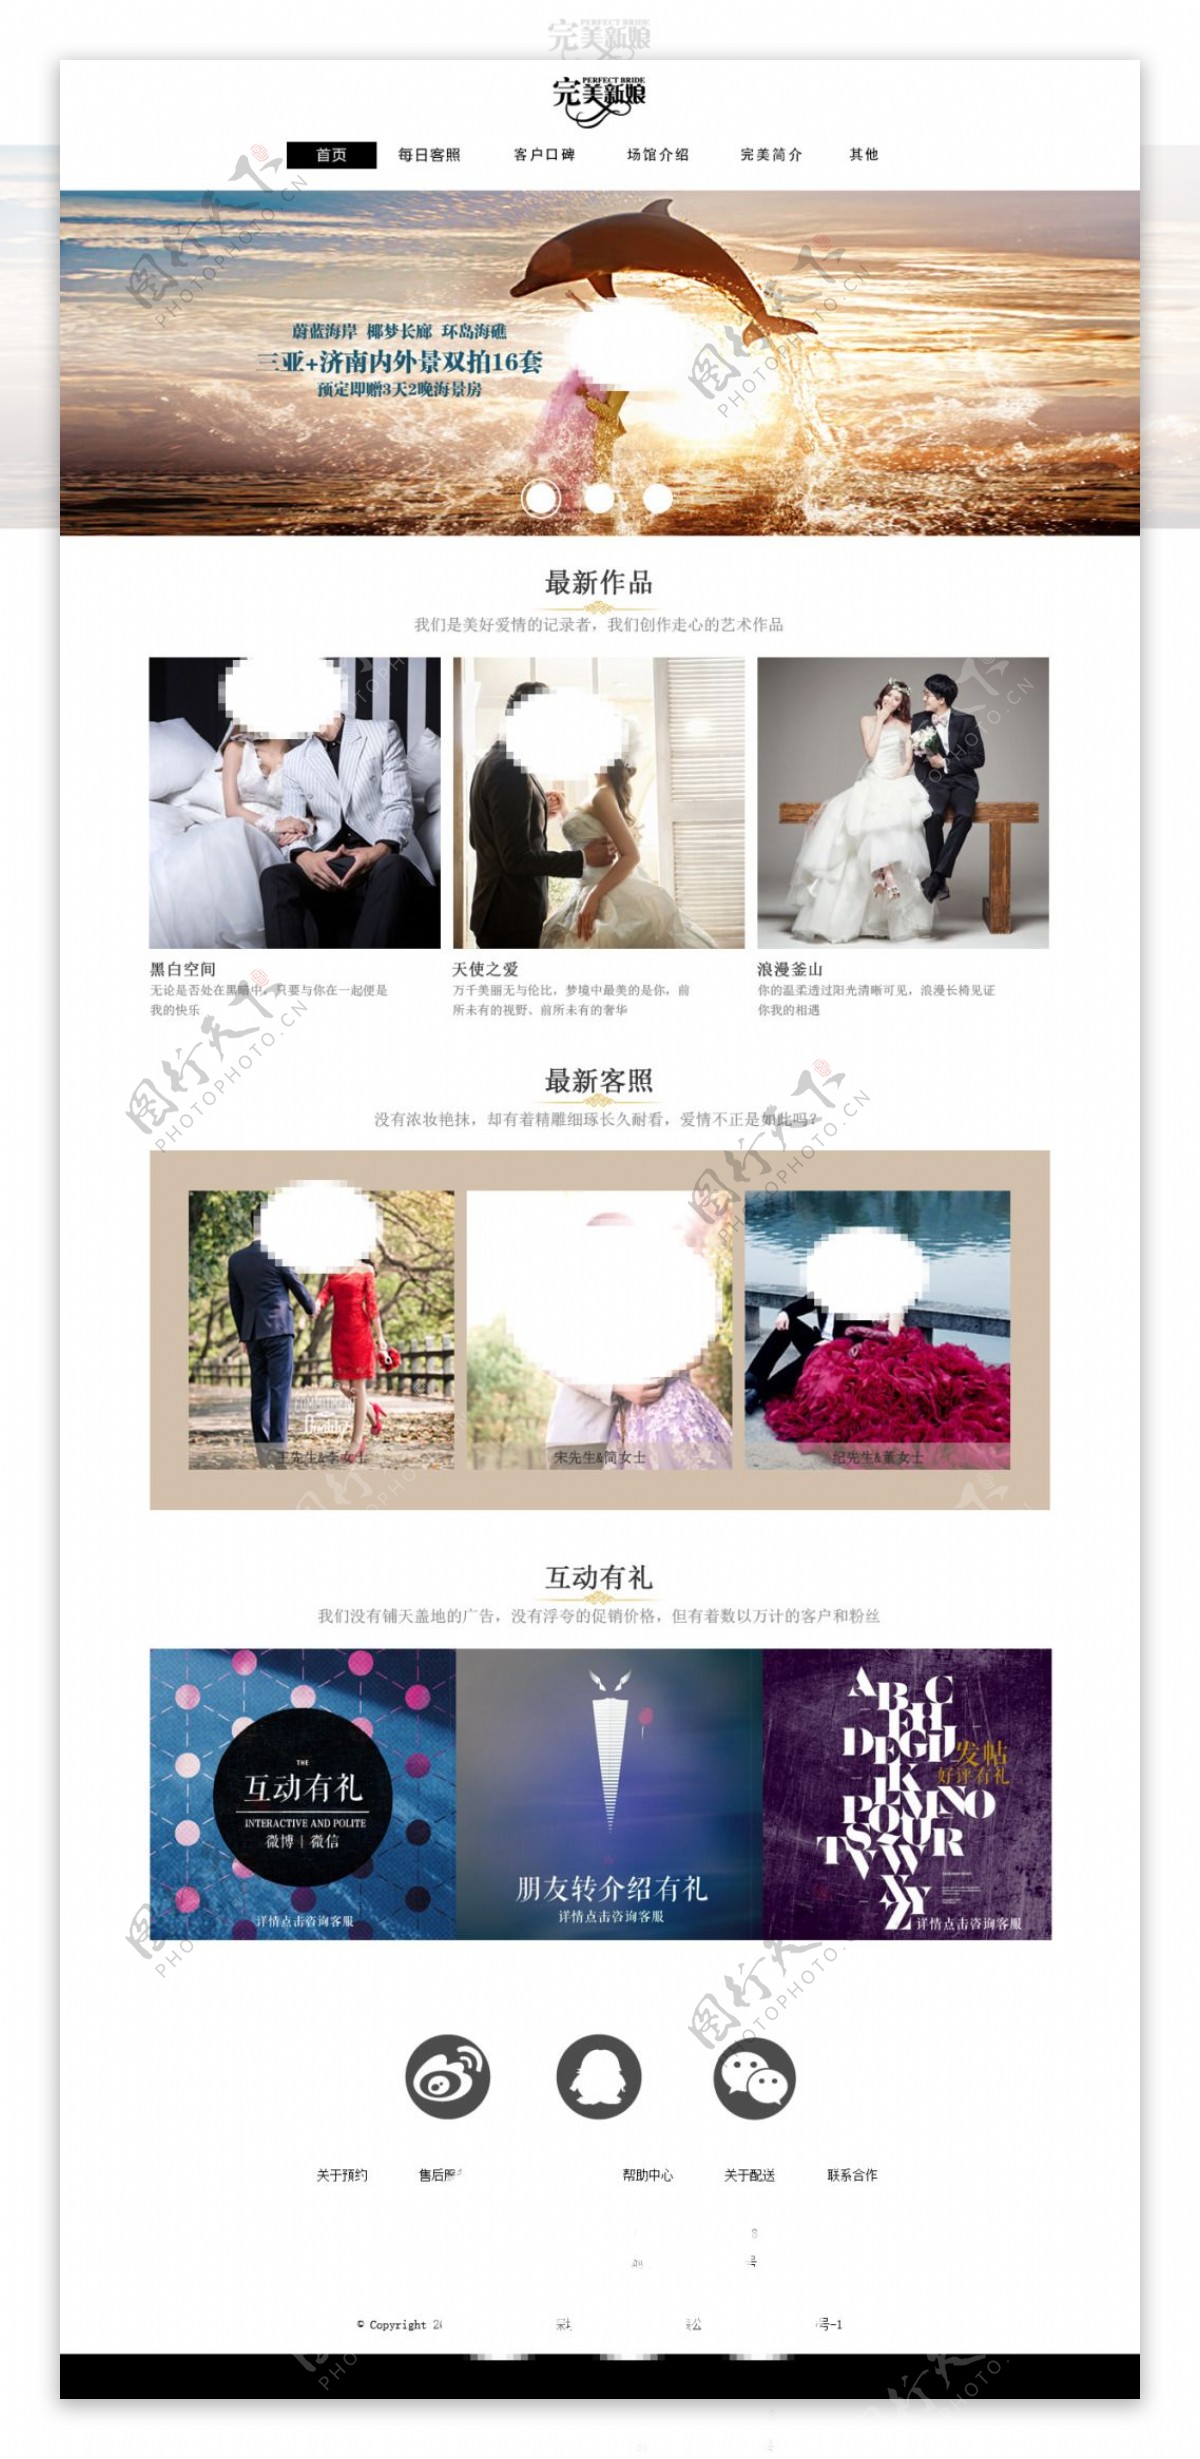 简单大气的婚纱摄影网页设计